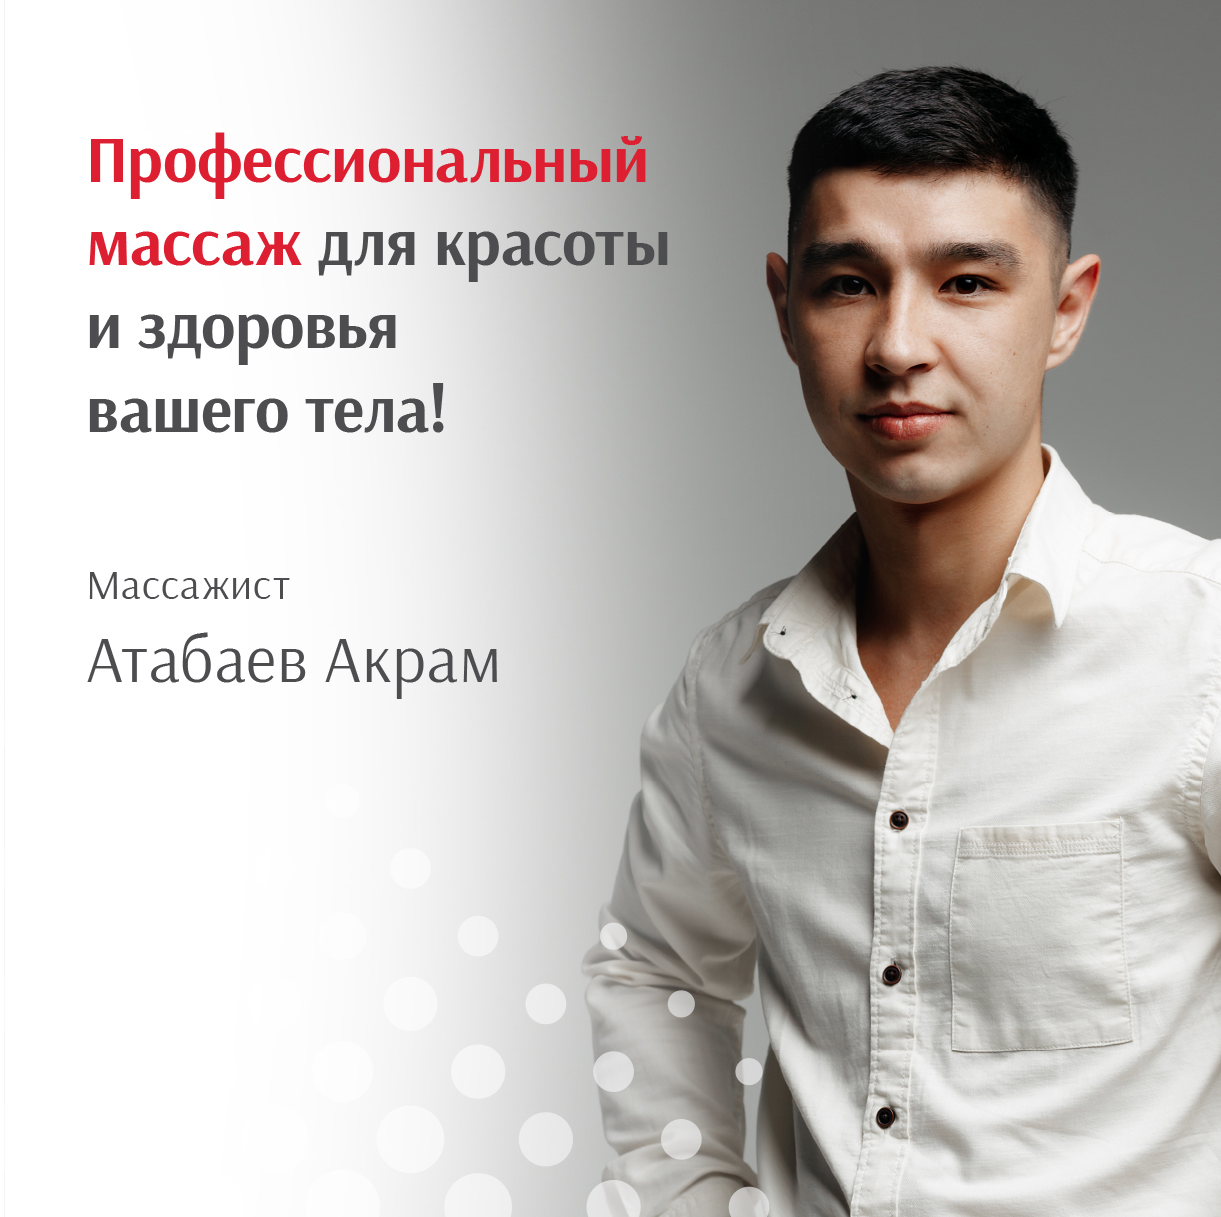 Атабаев Акрам вновь ведёт приём на сеансы массажа в Наноэстетик! 